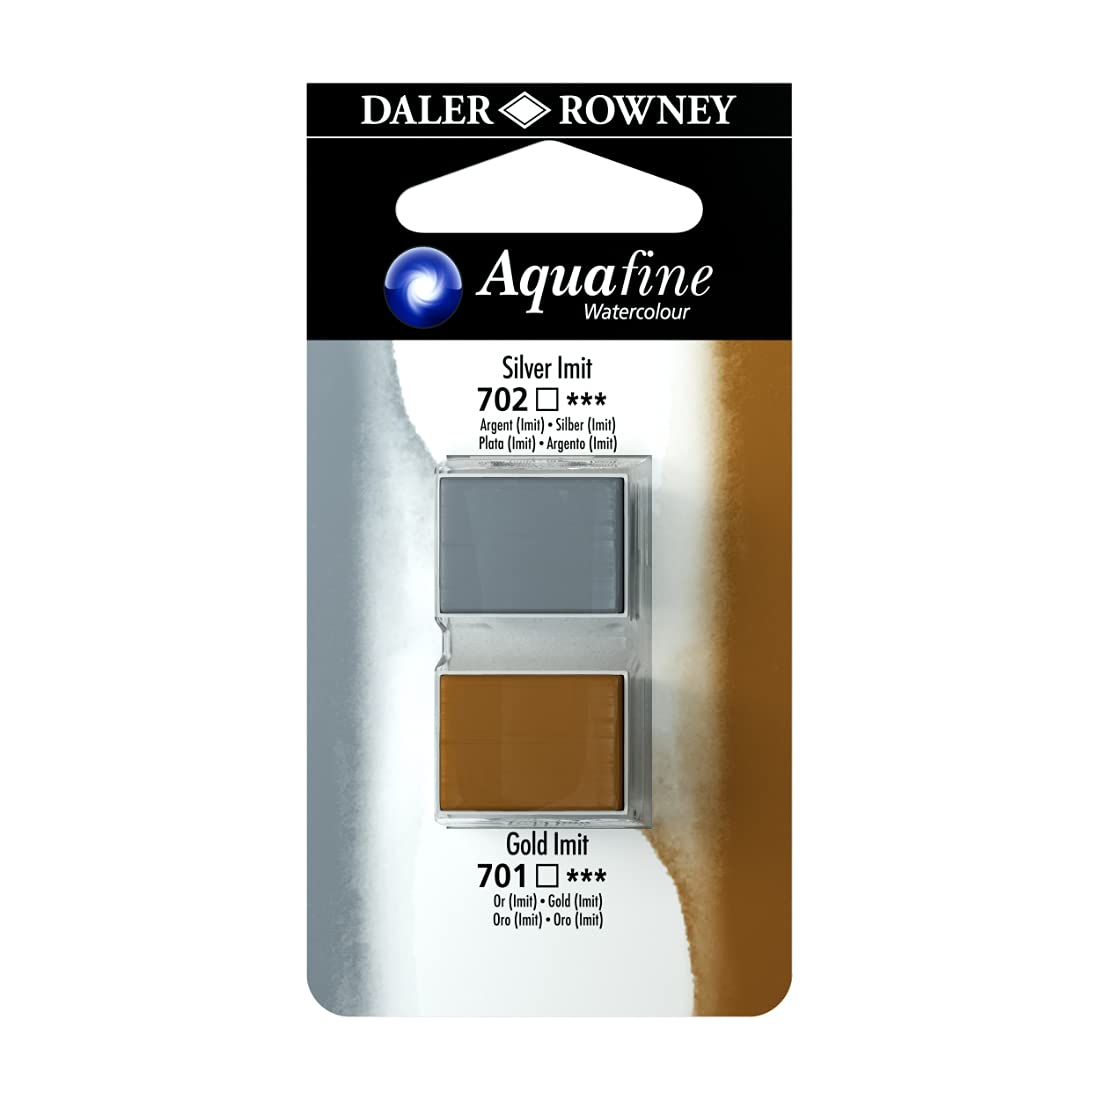 Daler-Rowney Aquafine Watercolour Blister Pack